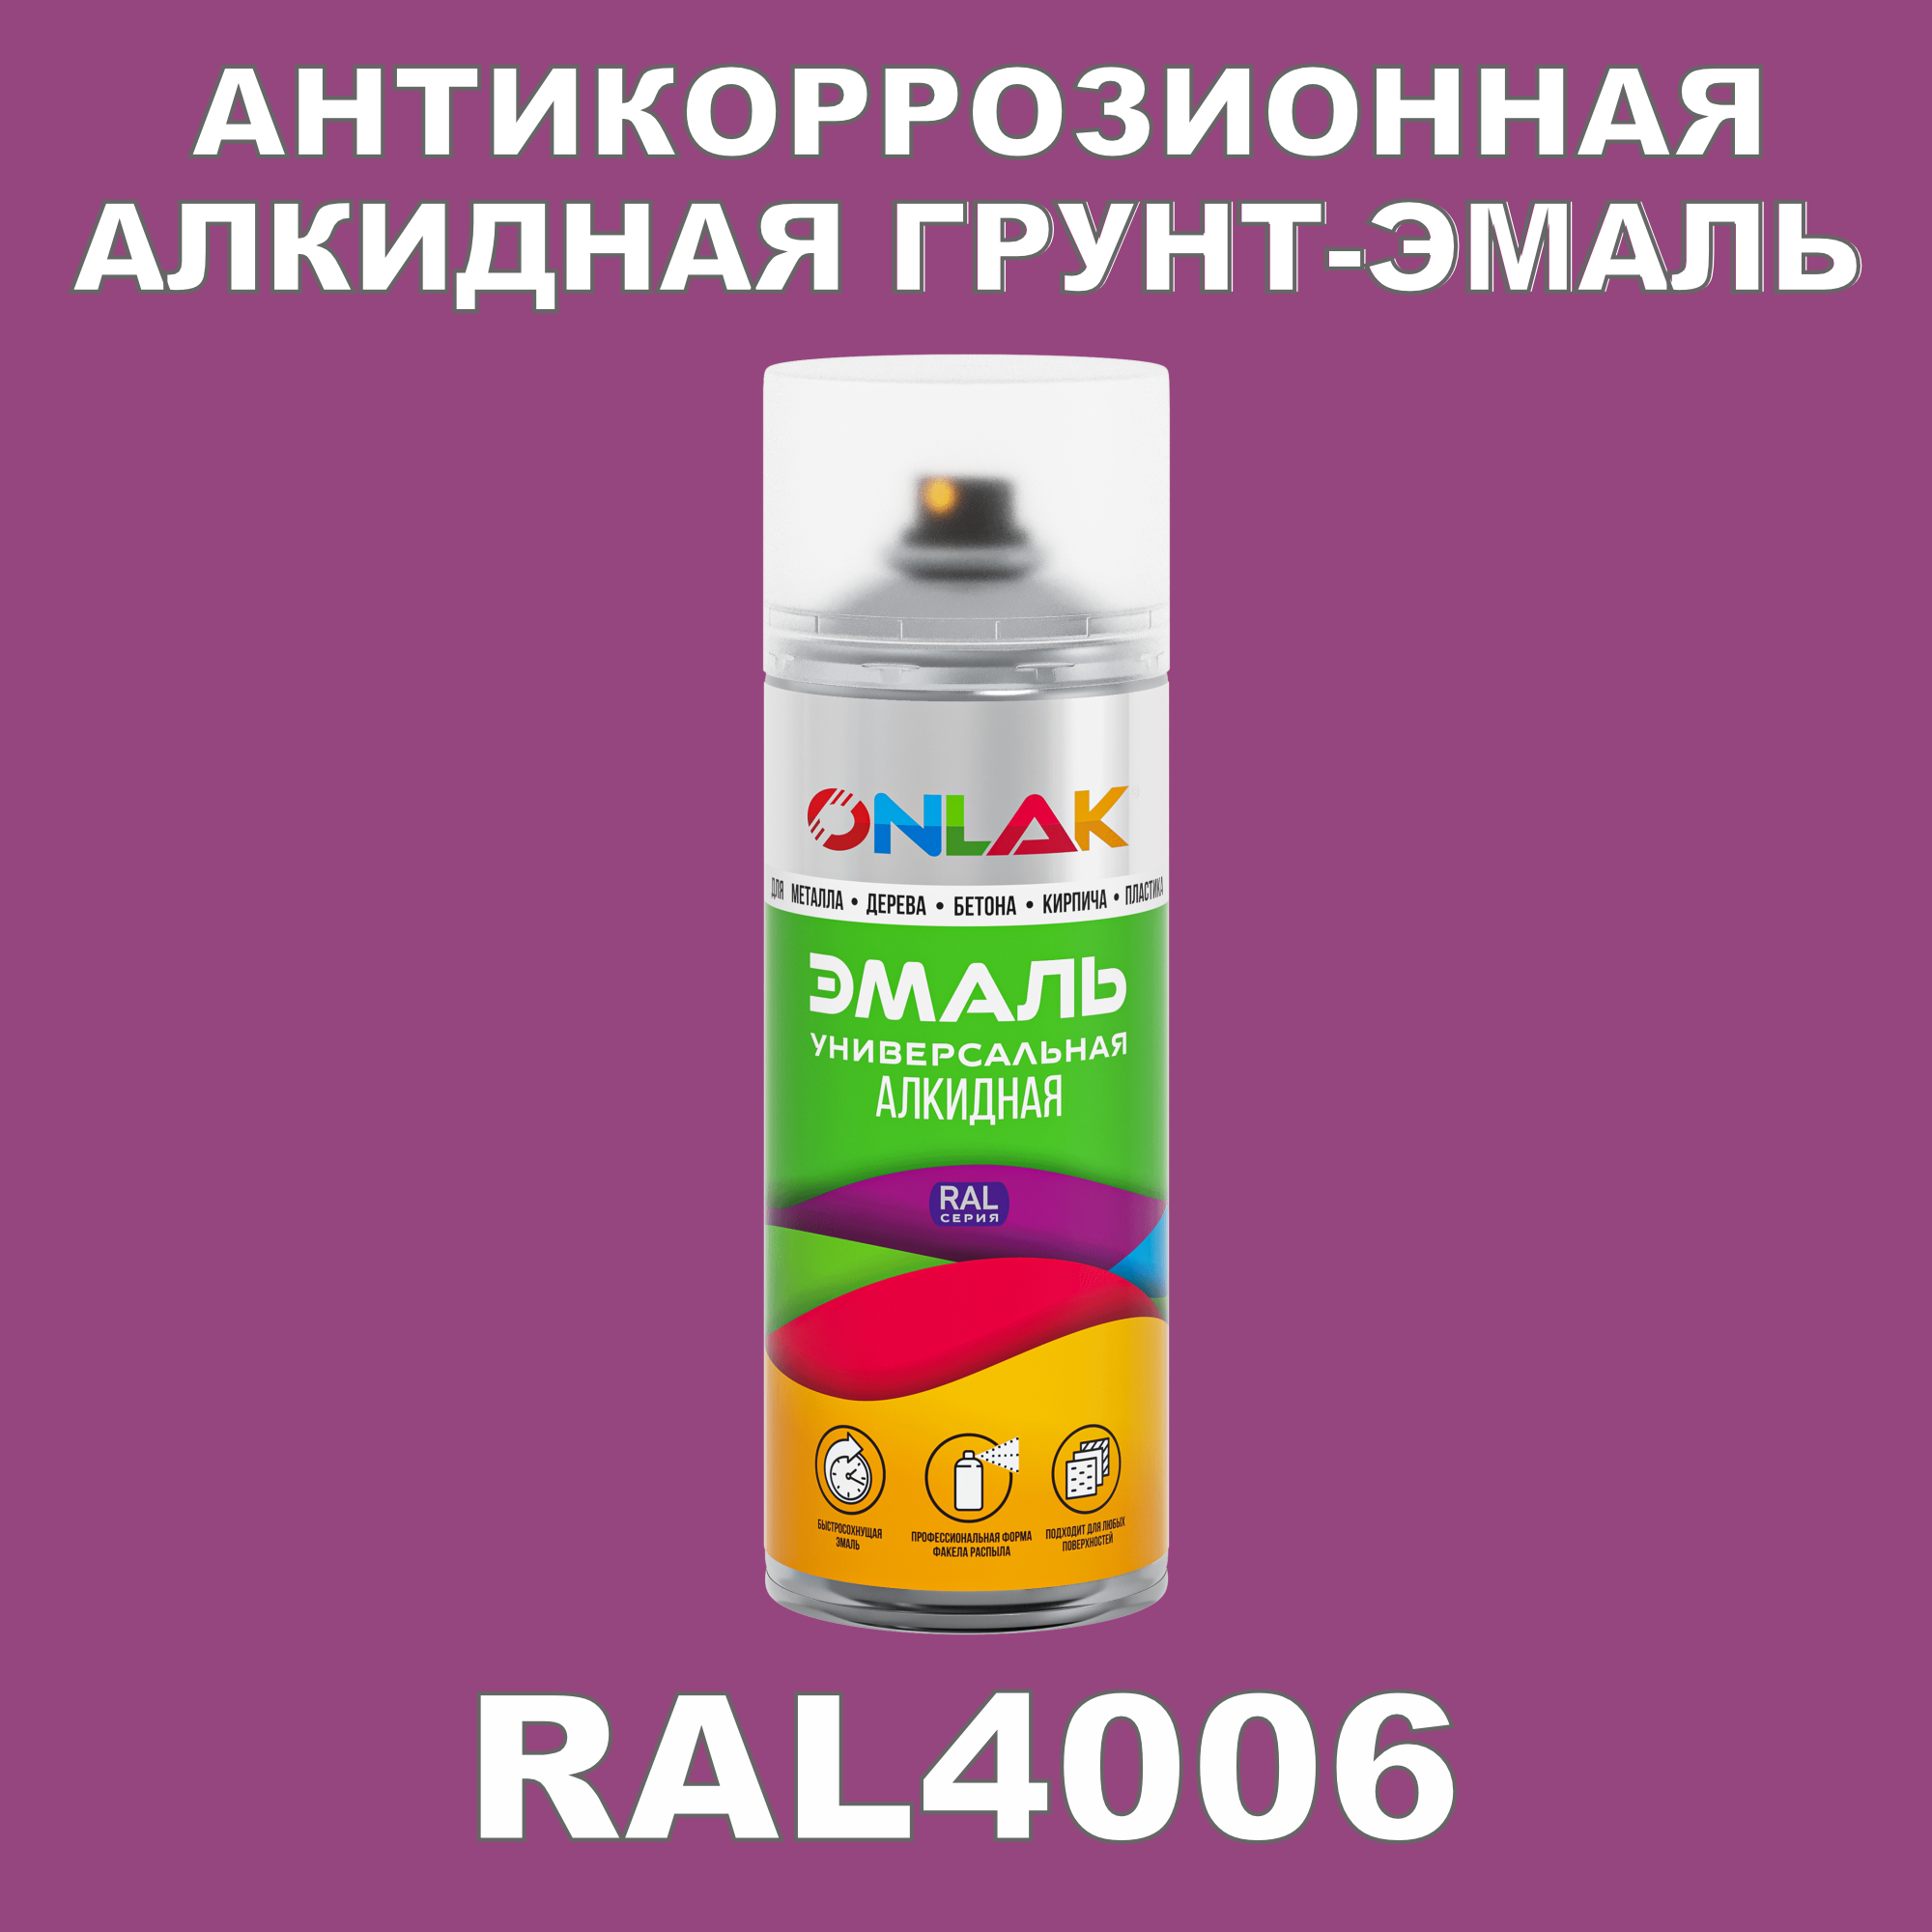 Антикоррозионная грунт-эмаль ONLAK RAL 4006,фиолетовый,682 мл artuniq color violet ной грунт для аквариума фиолетовый 9 кг